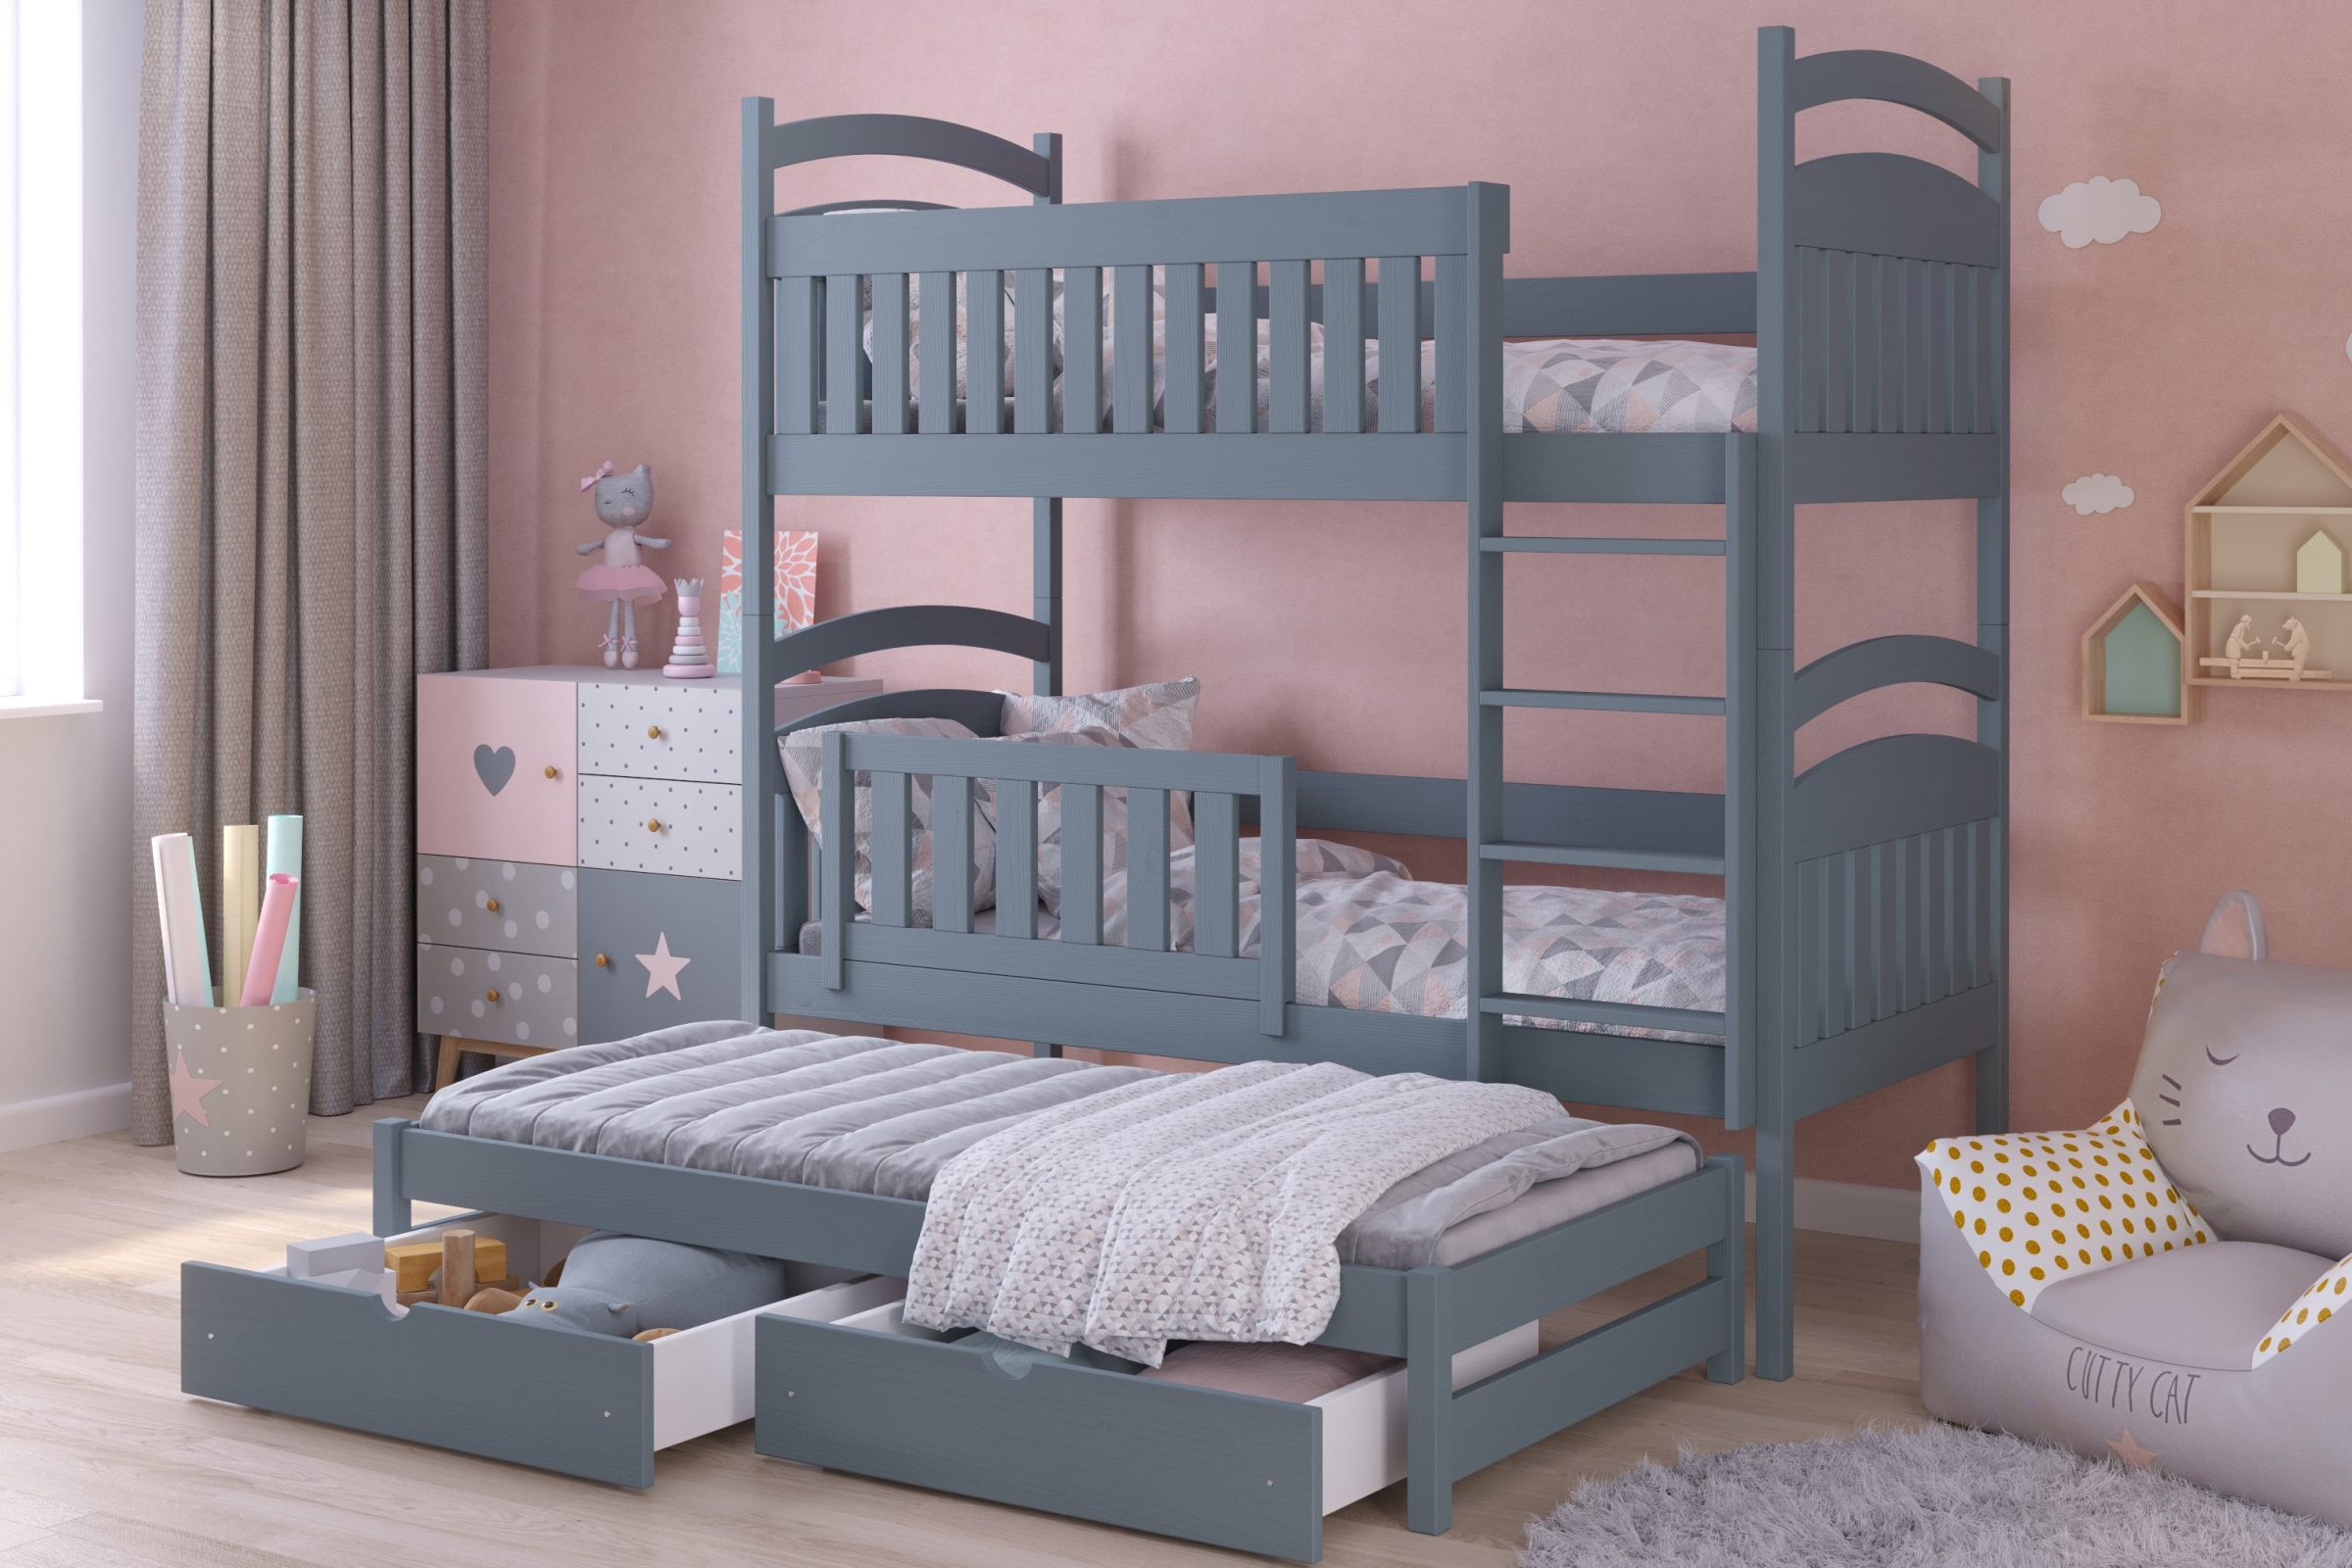  postel dětské patrová  výsuvná 3 os. Amely - Barva grafit, rozměr 80x160 postel dzieciece patrová  výsuvná 3 os. Amely - Barva grafit - aranzacja